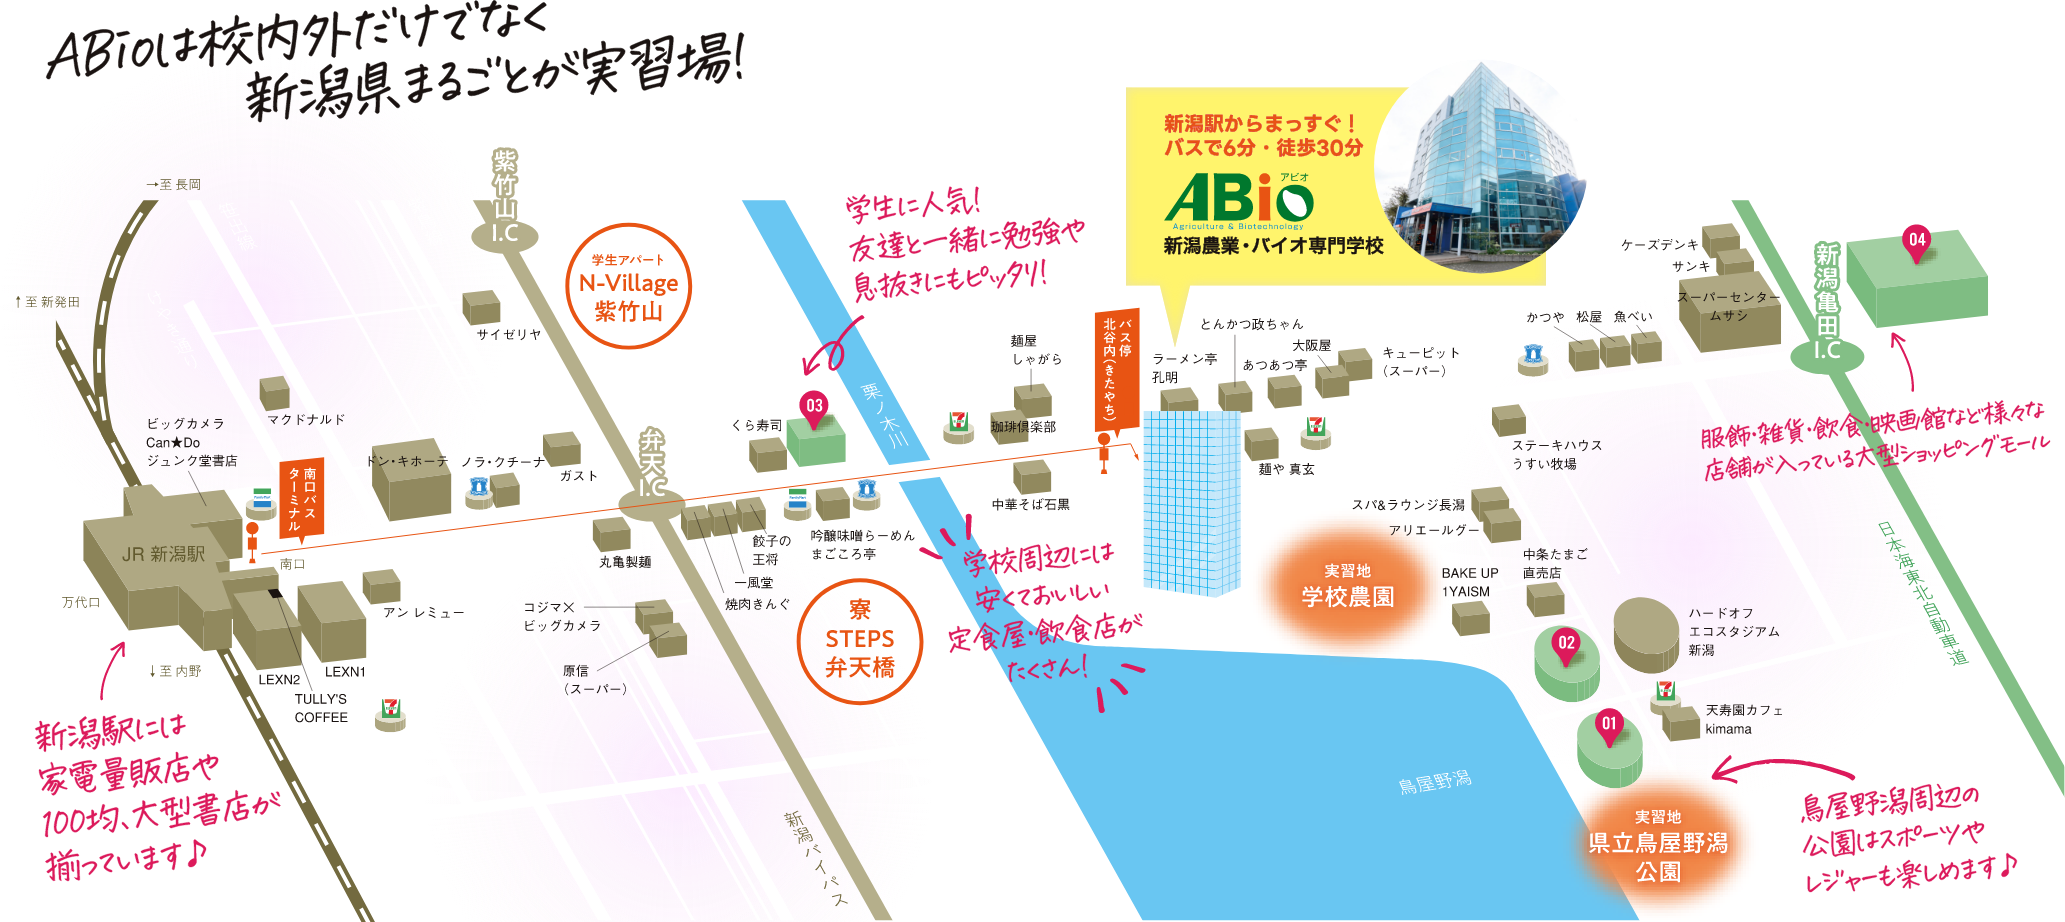 ABioは校内外だけでなく新潟県丸ごとが実習場！